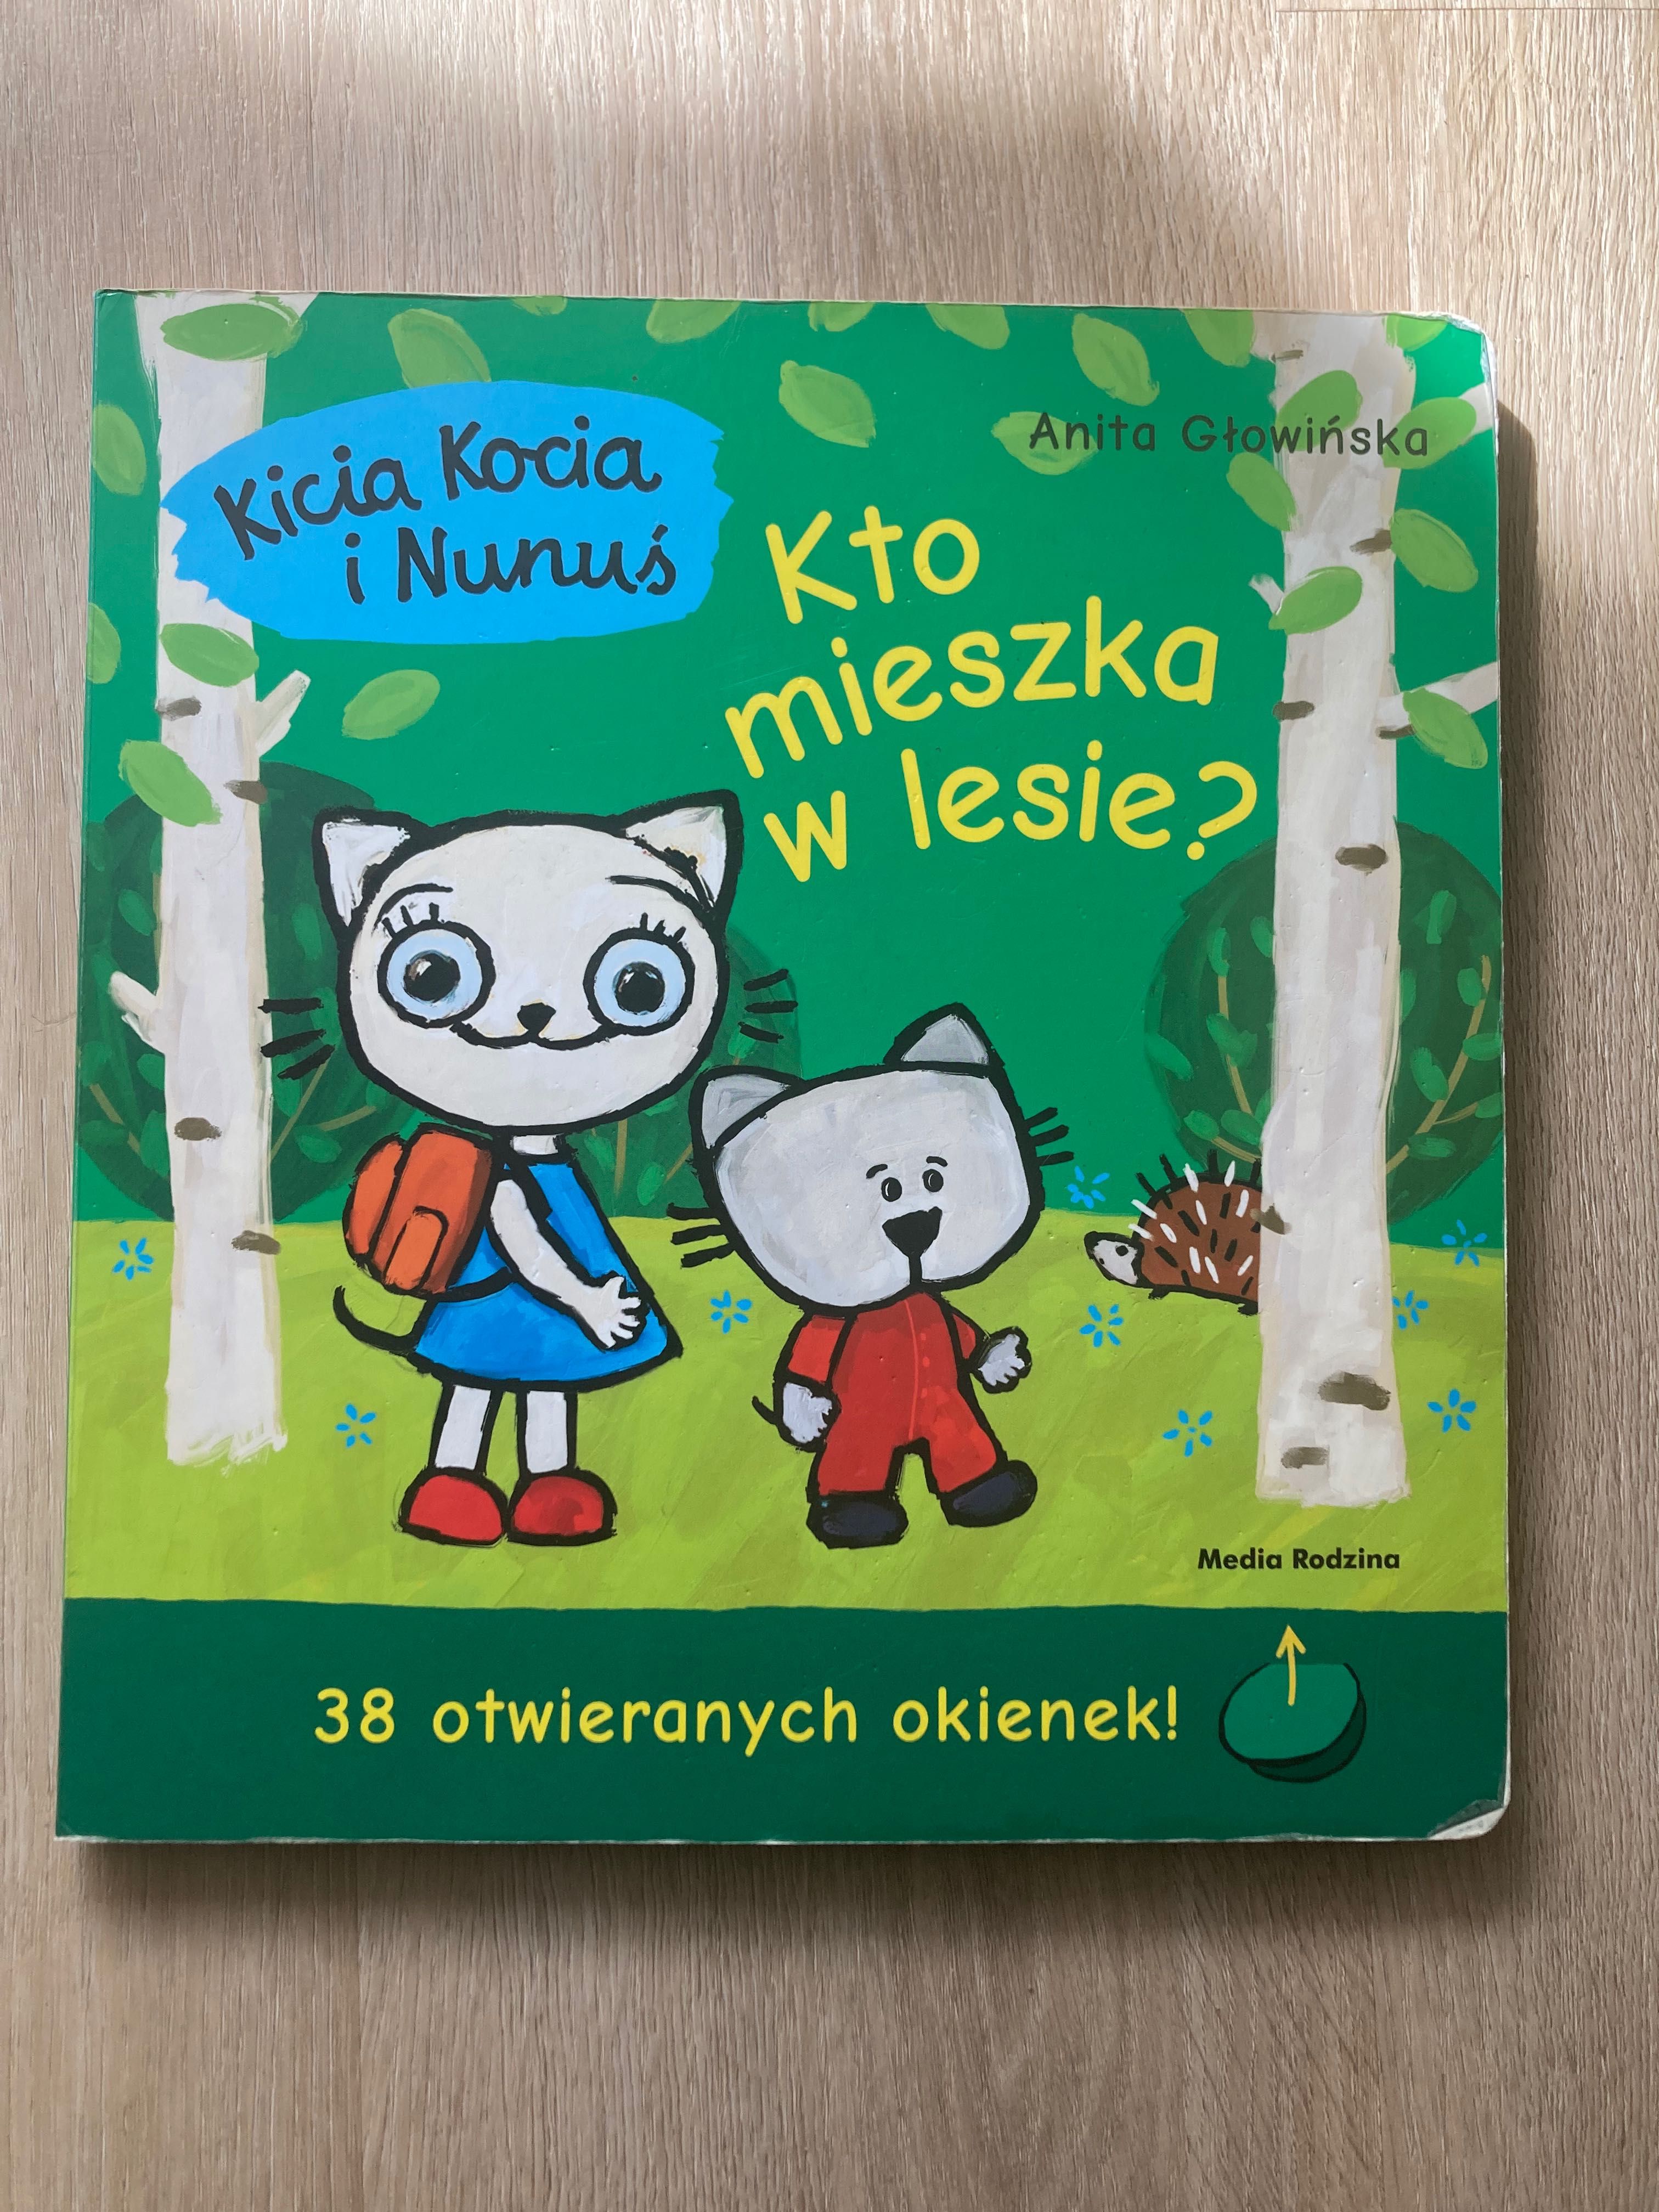 Kicia Kocia i Nunuś. Kto mieszka w lesie? - książka z okienkami